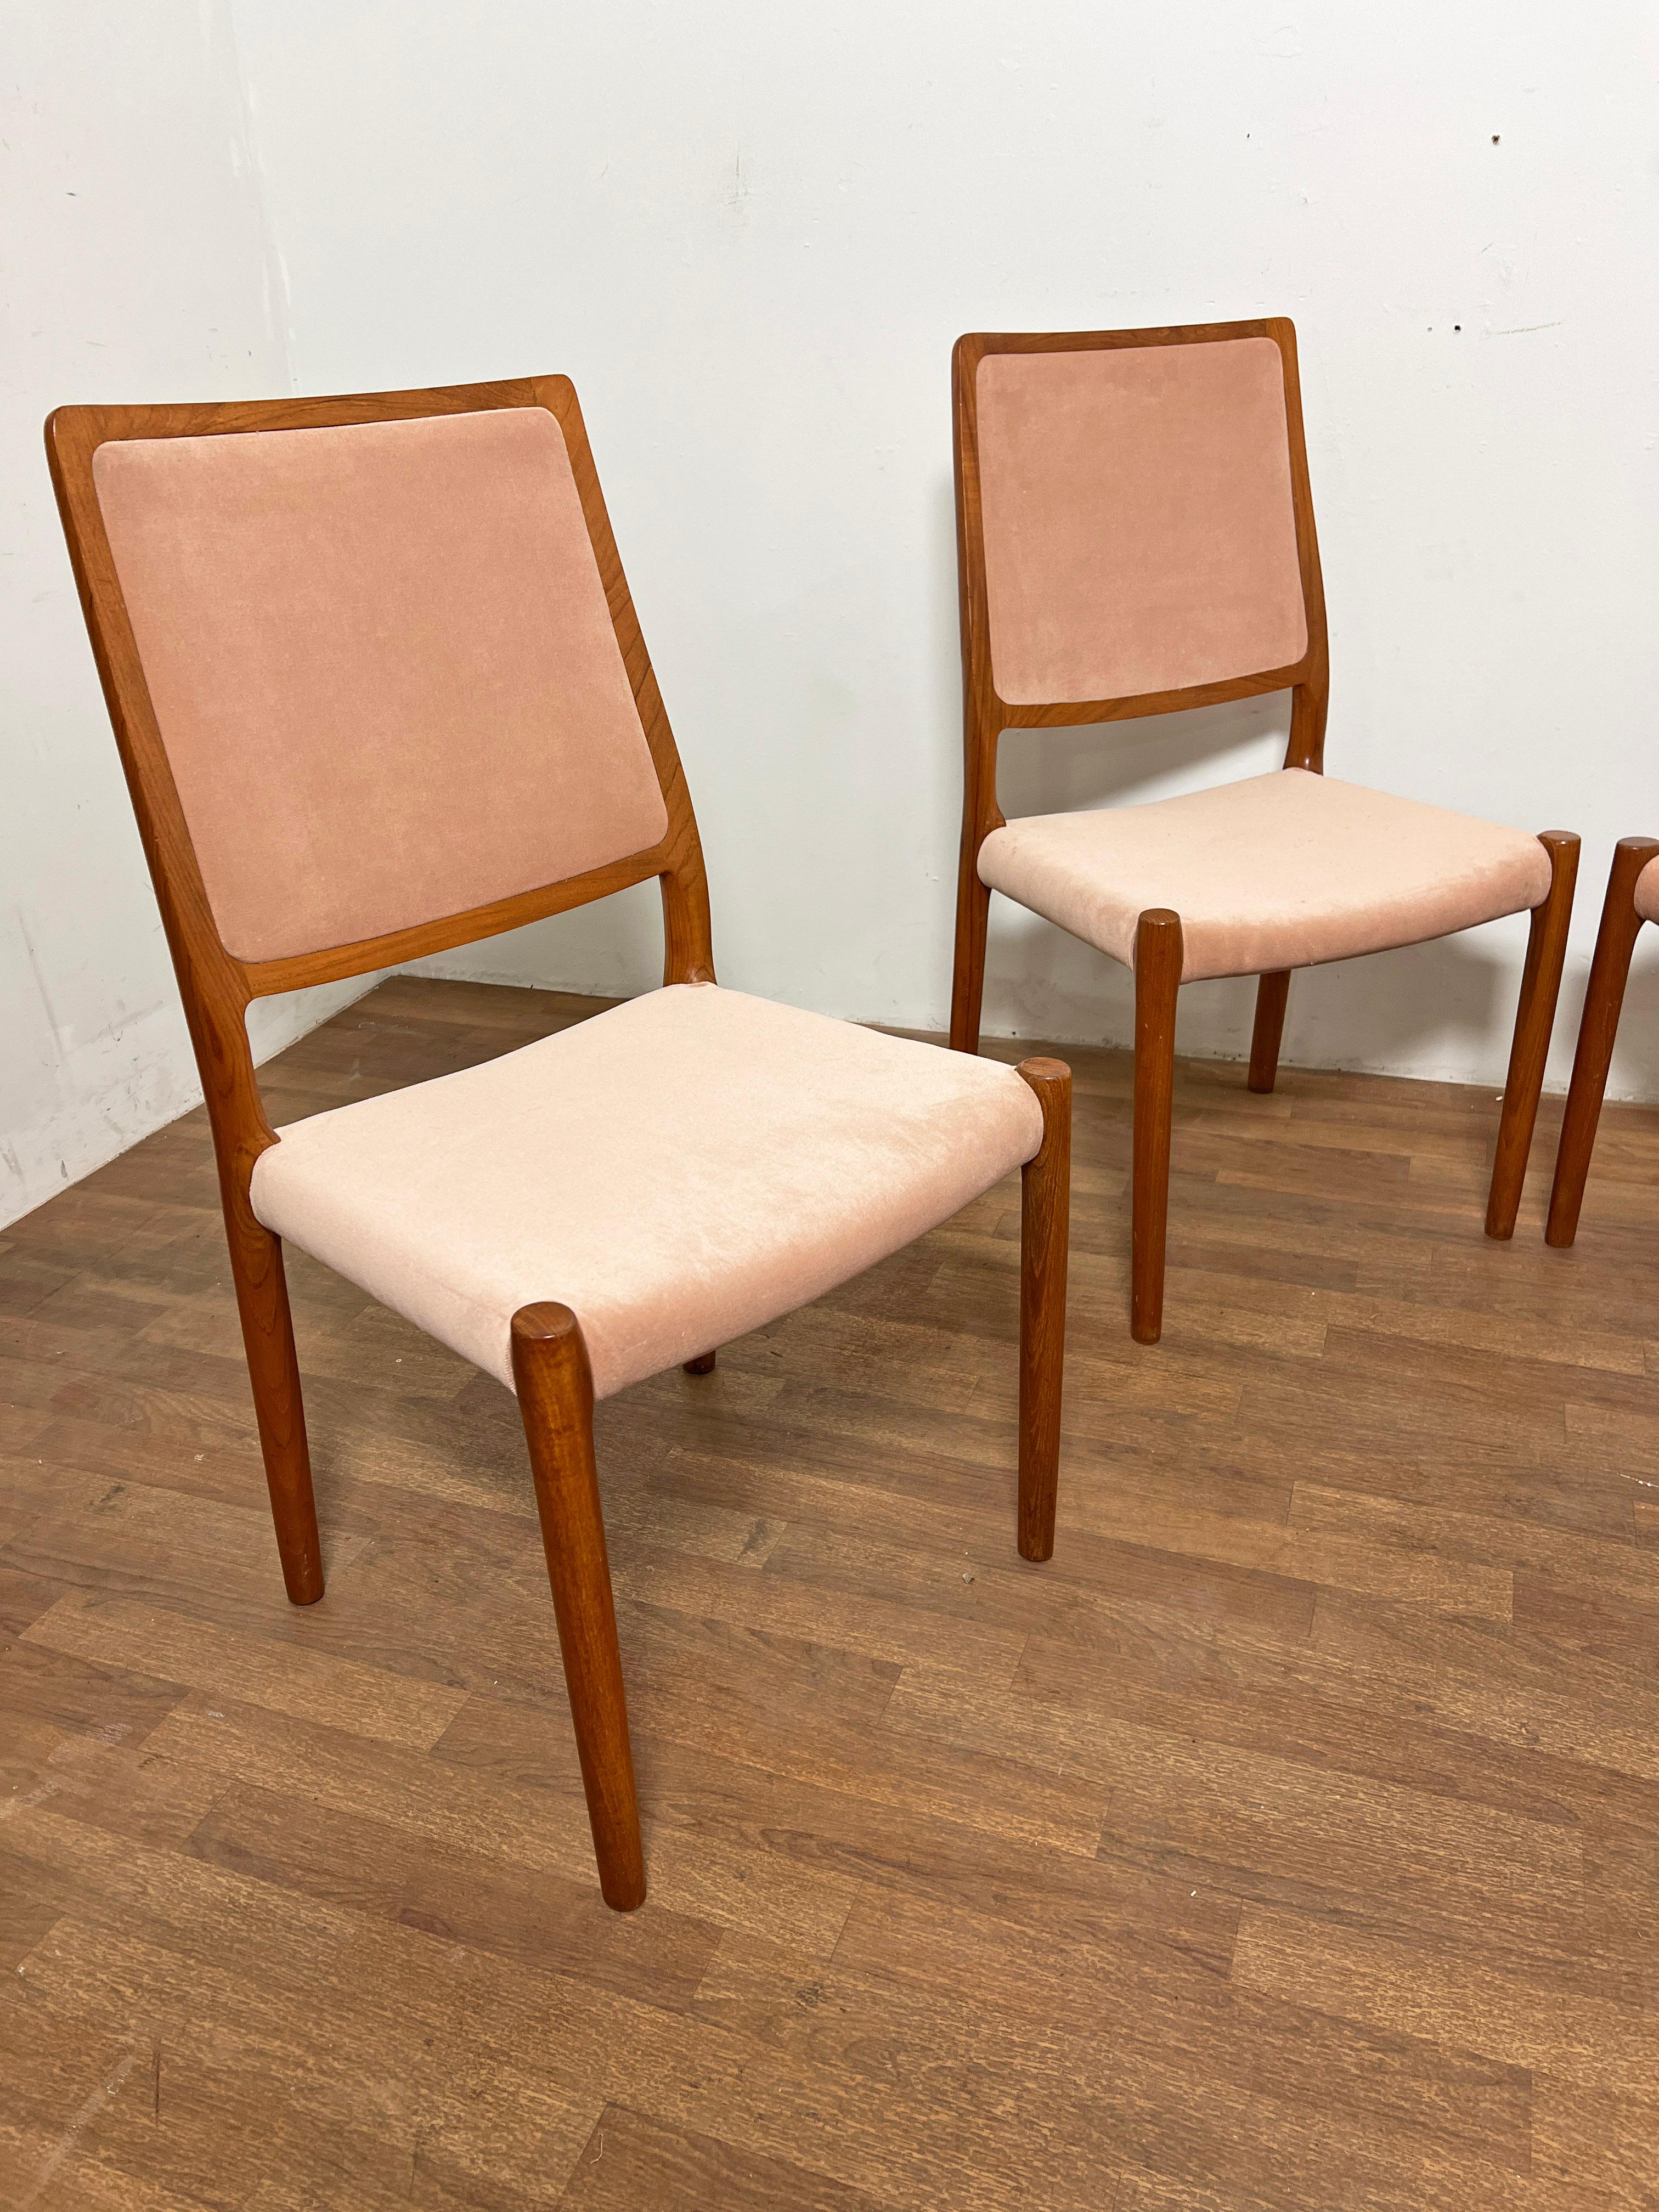 Satz von vier Esszimmerstühlen aus Teakholz, Modell #86, entworfen von Niels Moller für J.L. Moller, Dänemark, ca. Mitte der 1980er Jahre.